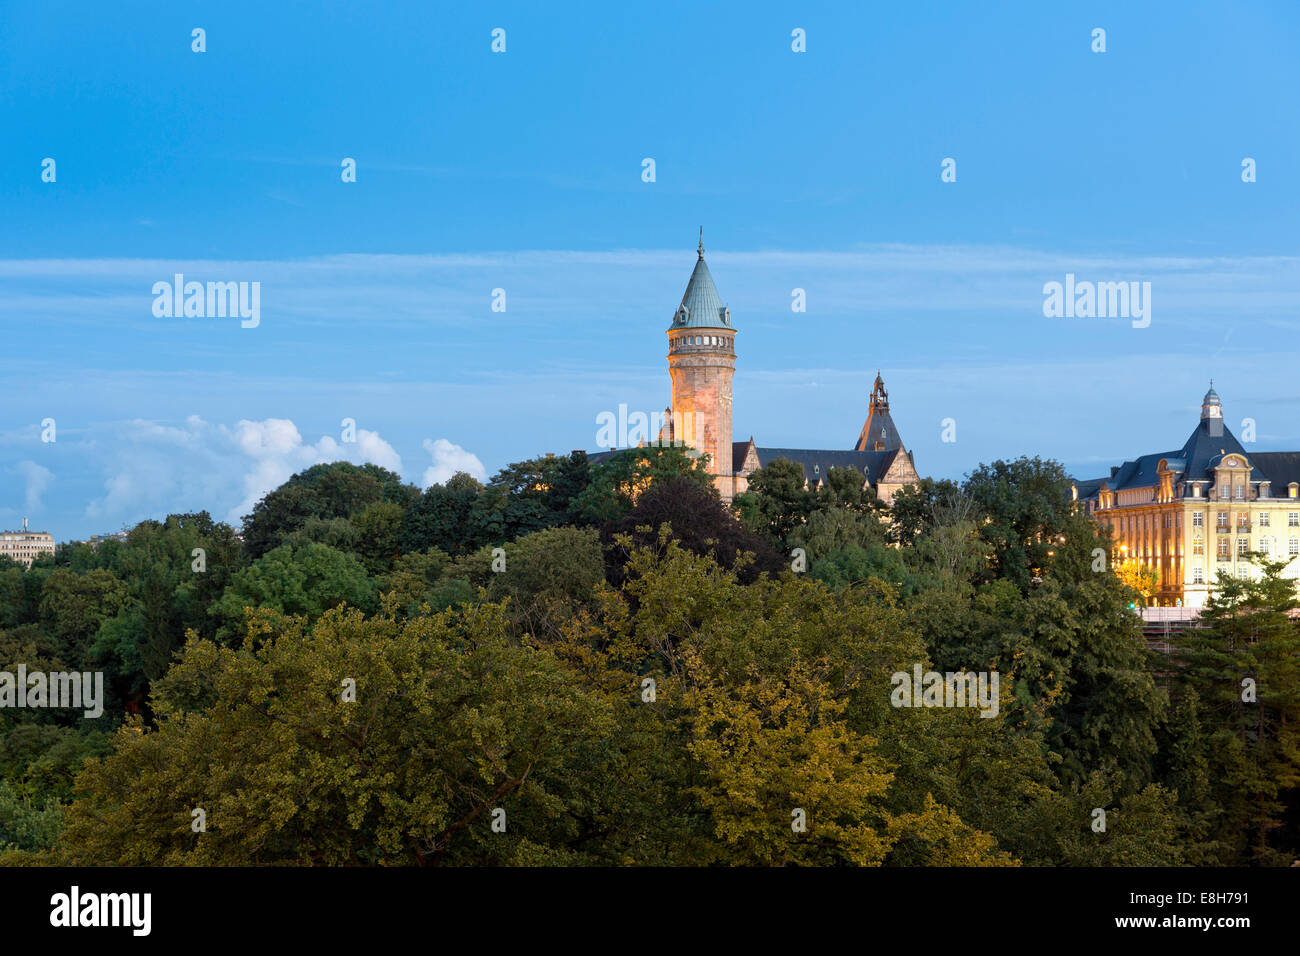 Luxemburgo, ciudad de Luxemburgo, Musee de la Banque, Torre de la mañana Foto de stock